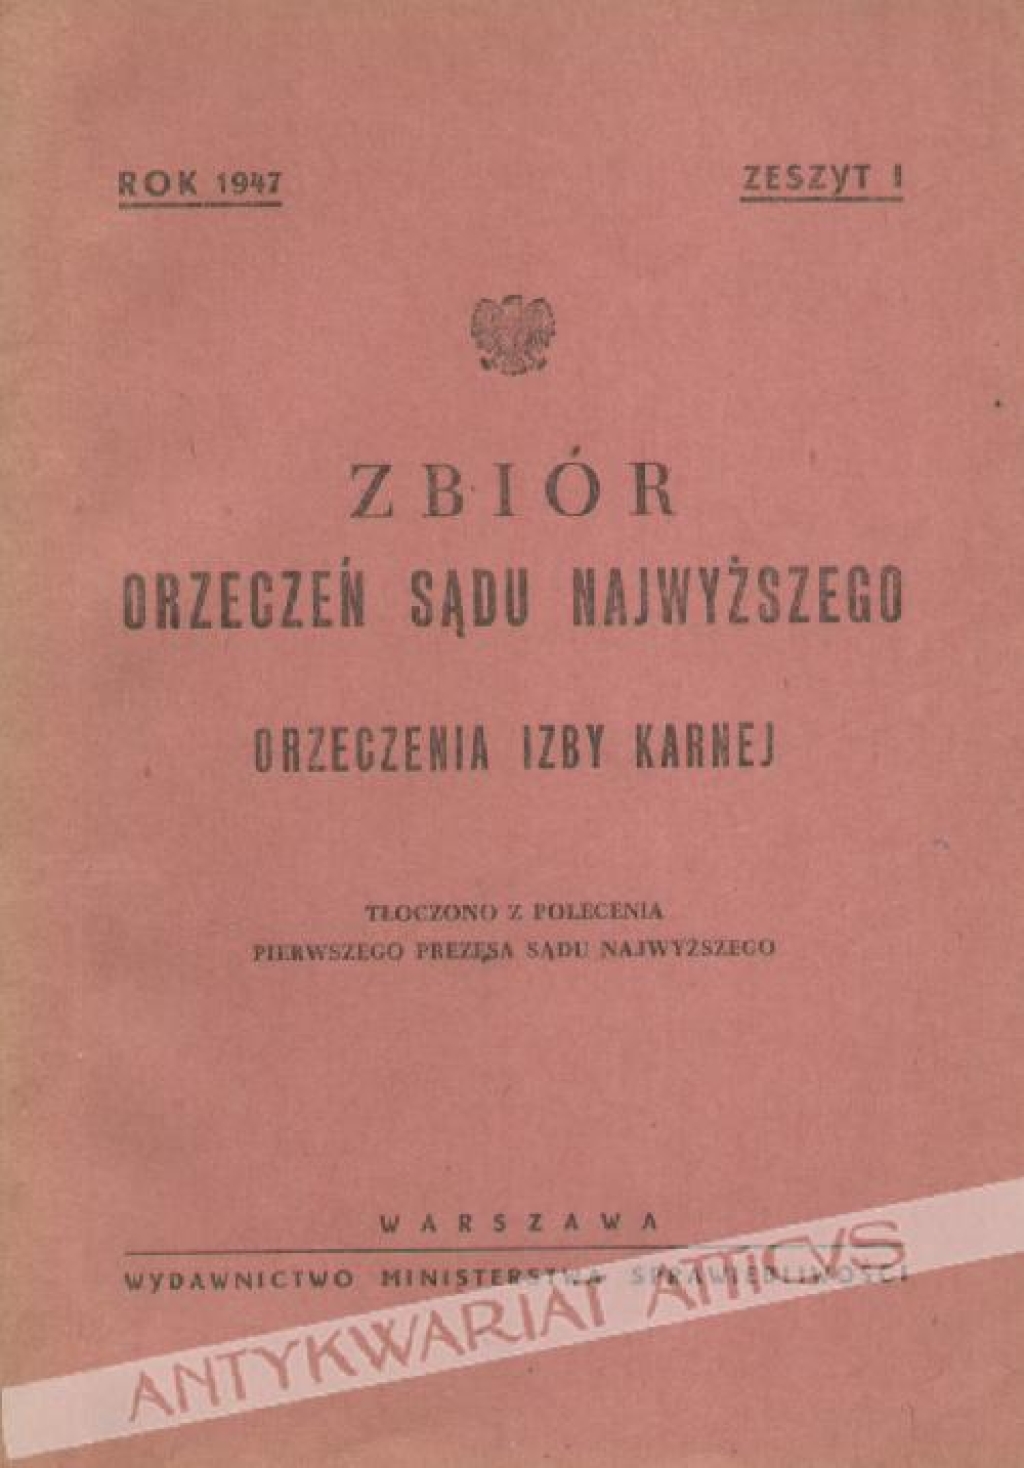 Zbiór orzeczeń Sądu Najwyższego. Orzeczenia Izby Karnej, [rok 1947], zeszyt I-II.